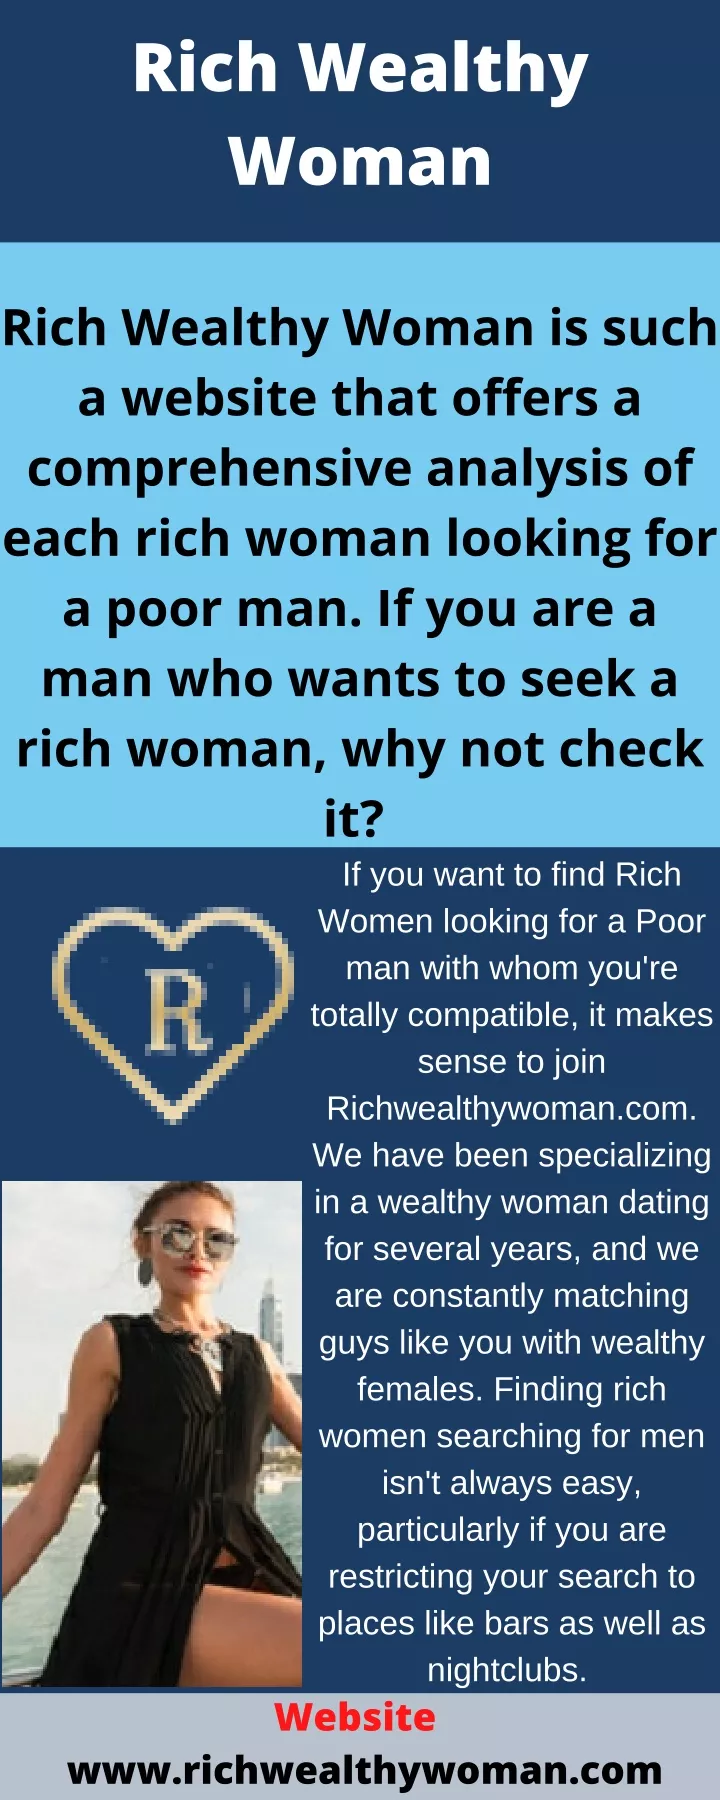 rich wealthy woman